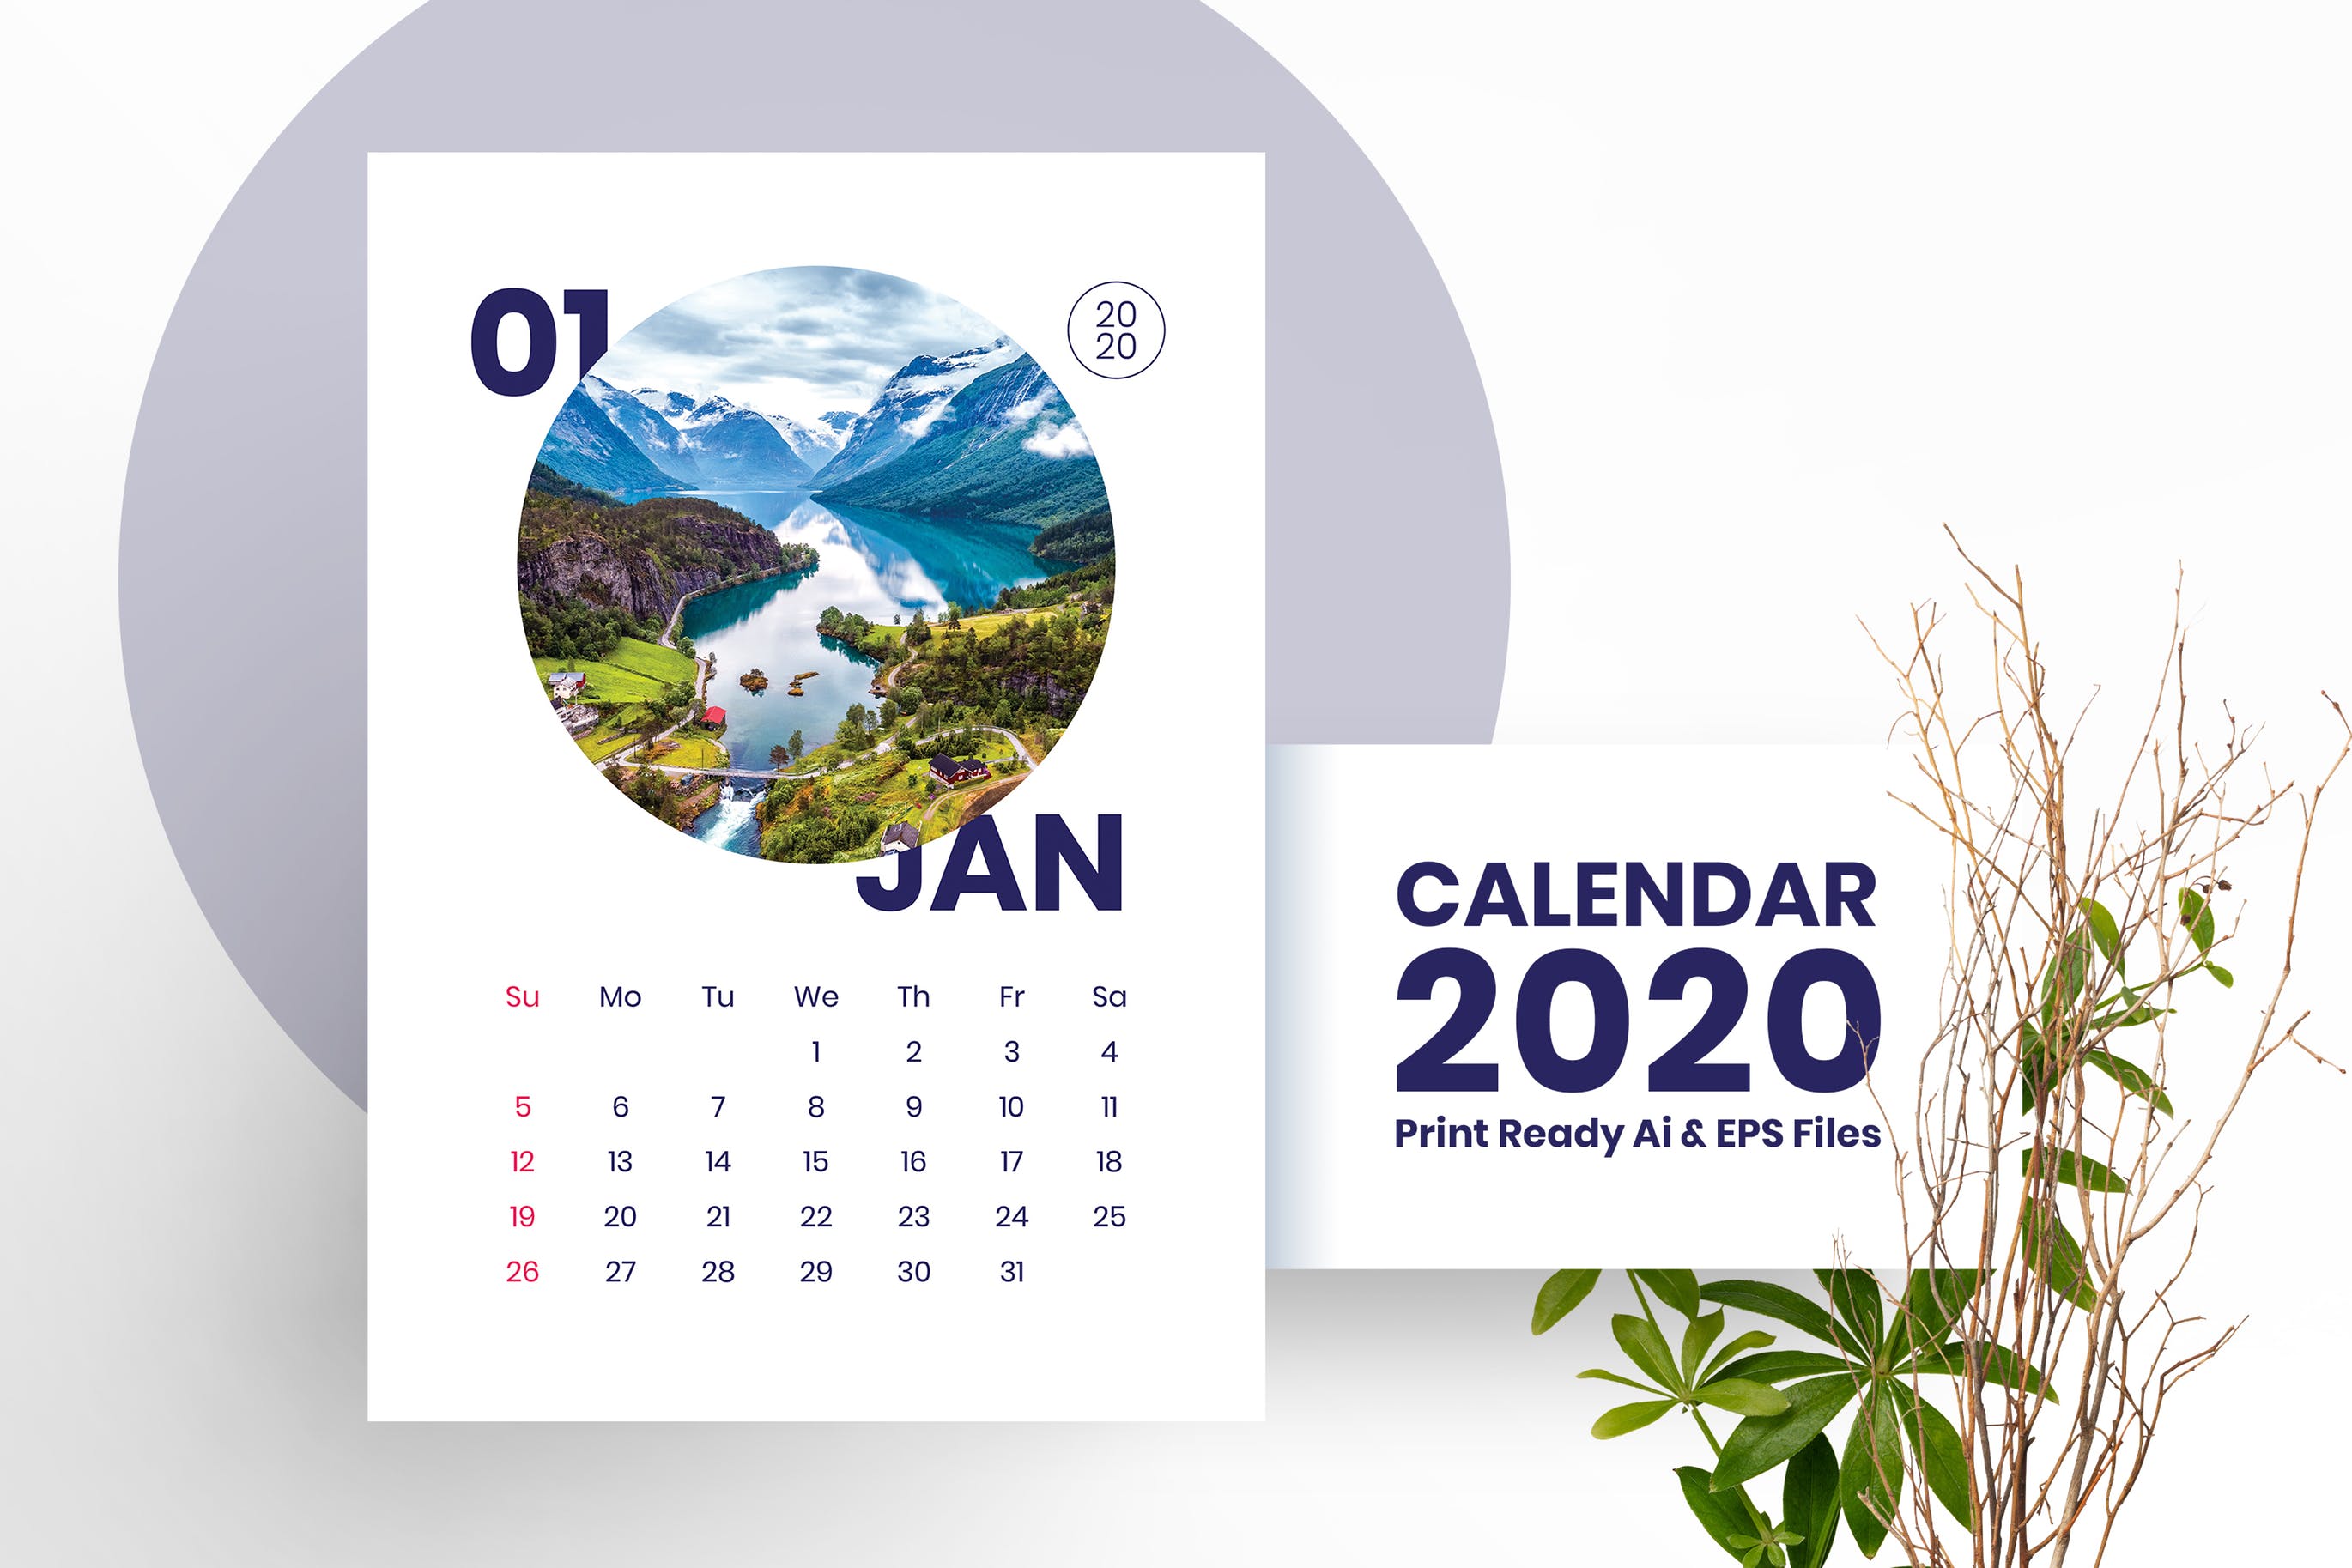 2020年风景日历年历设计模板 Calendar插图